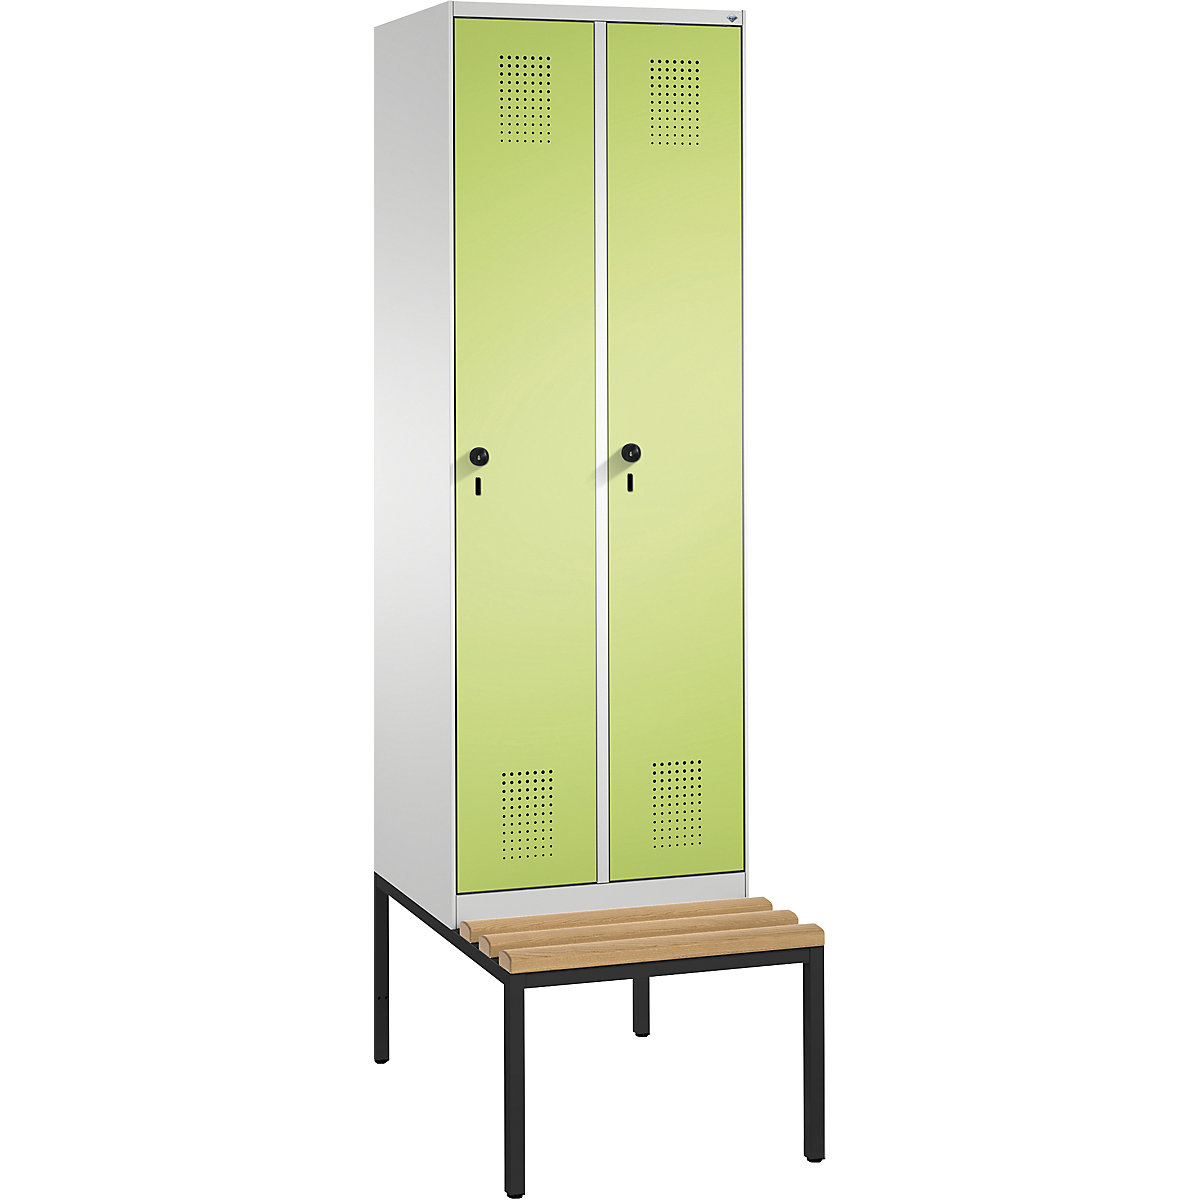 Garderobna omara EVOLO, s klopjo – C+P, 2 razdelka, širina razdelka 300 mm, svetlo siva / rumeno zelena-5